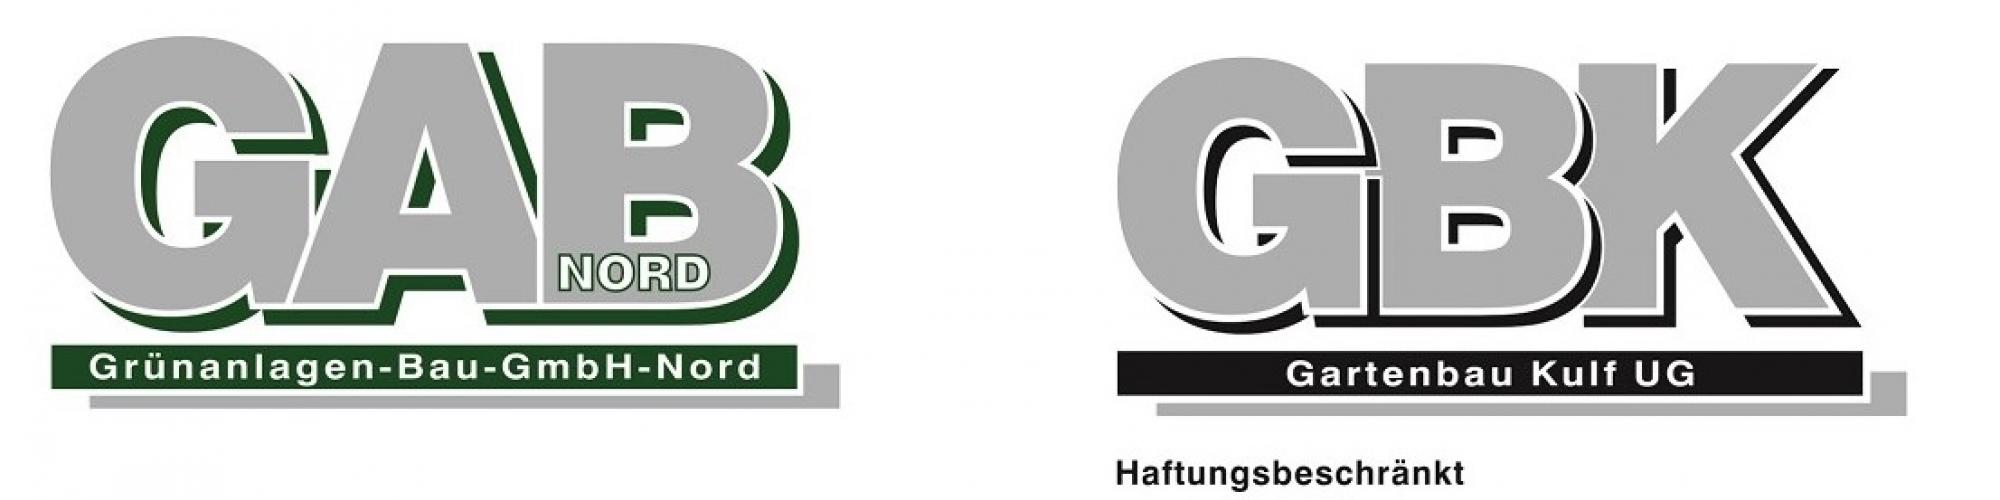 Grünanlagen-Bau-GmbH-Nord